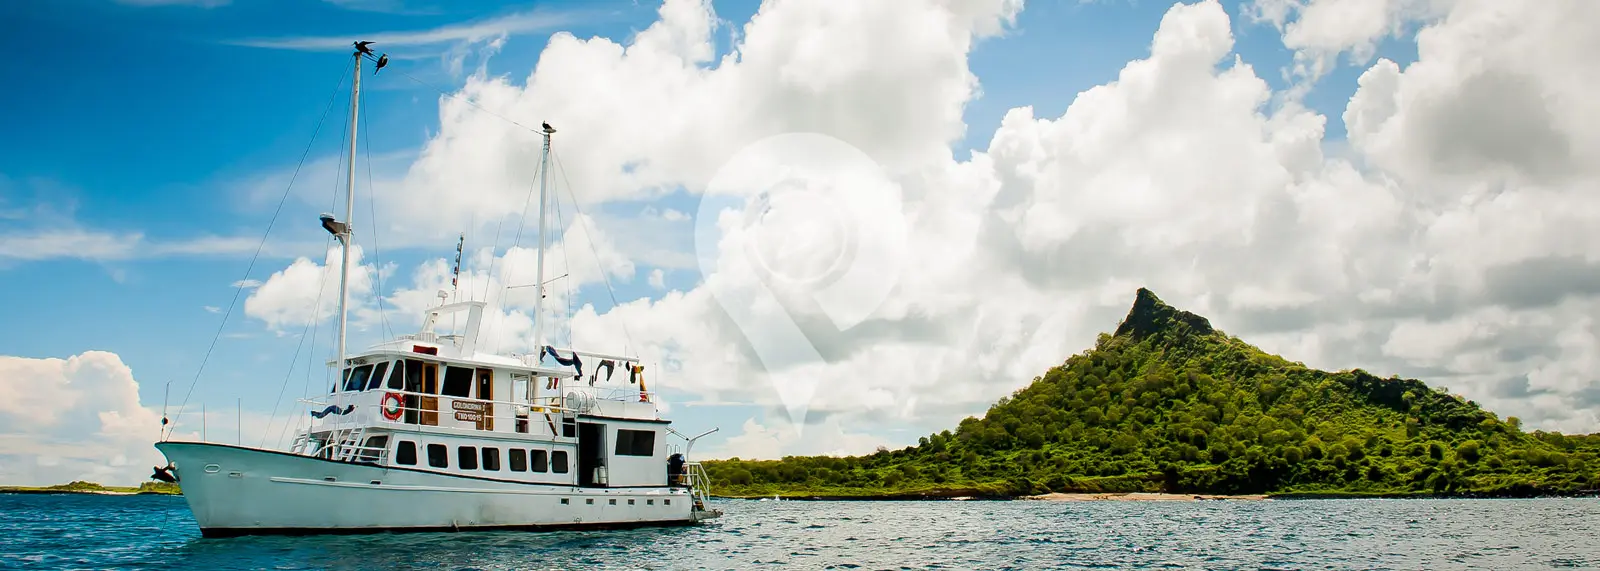 Golondrina Galapagos Yacht